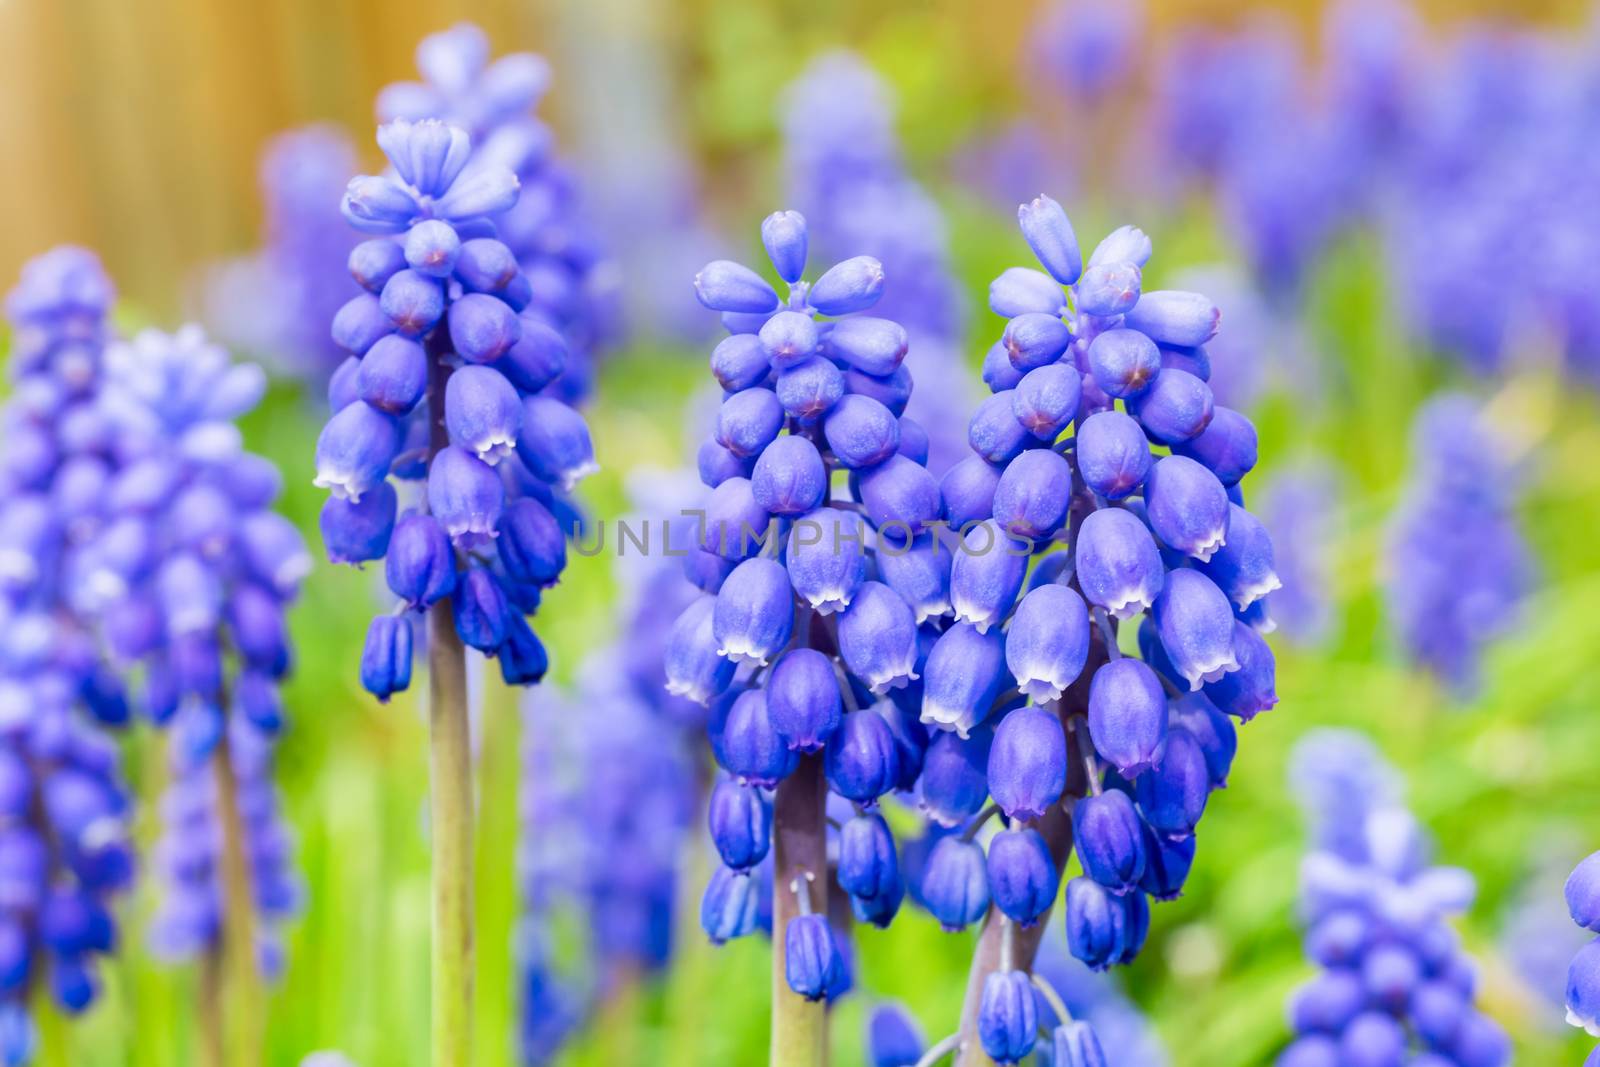 Blue grape hyacinths by BenSchonewille